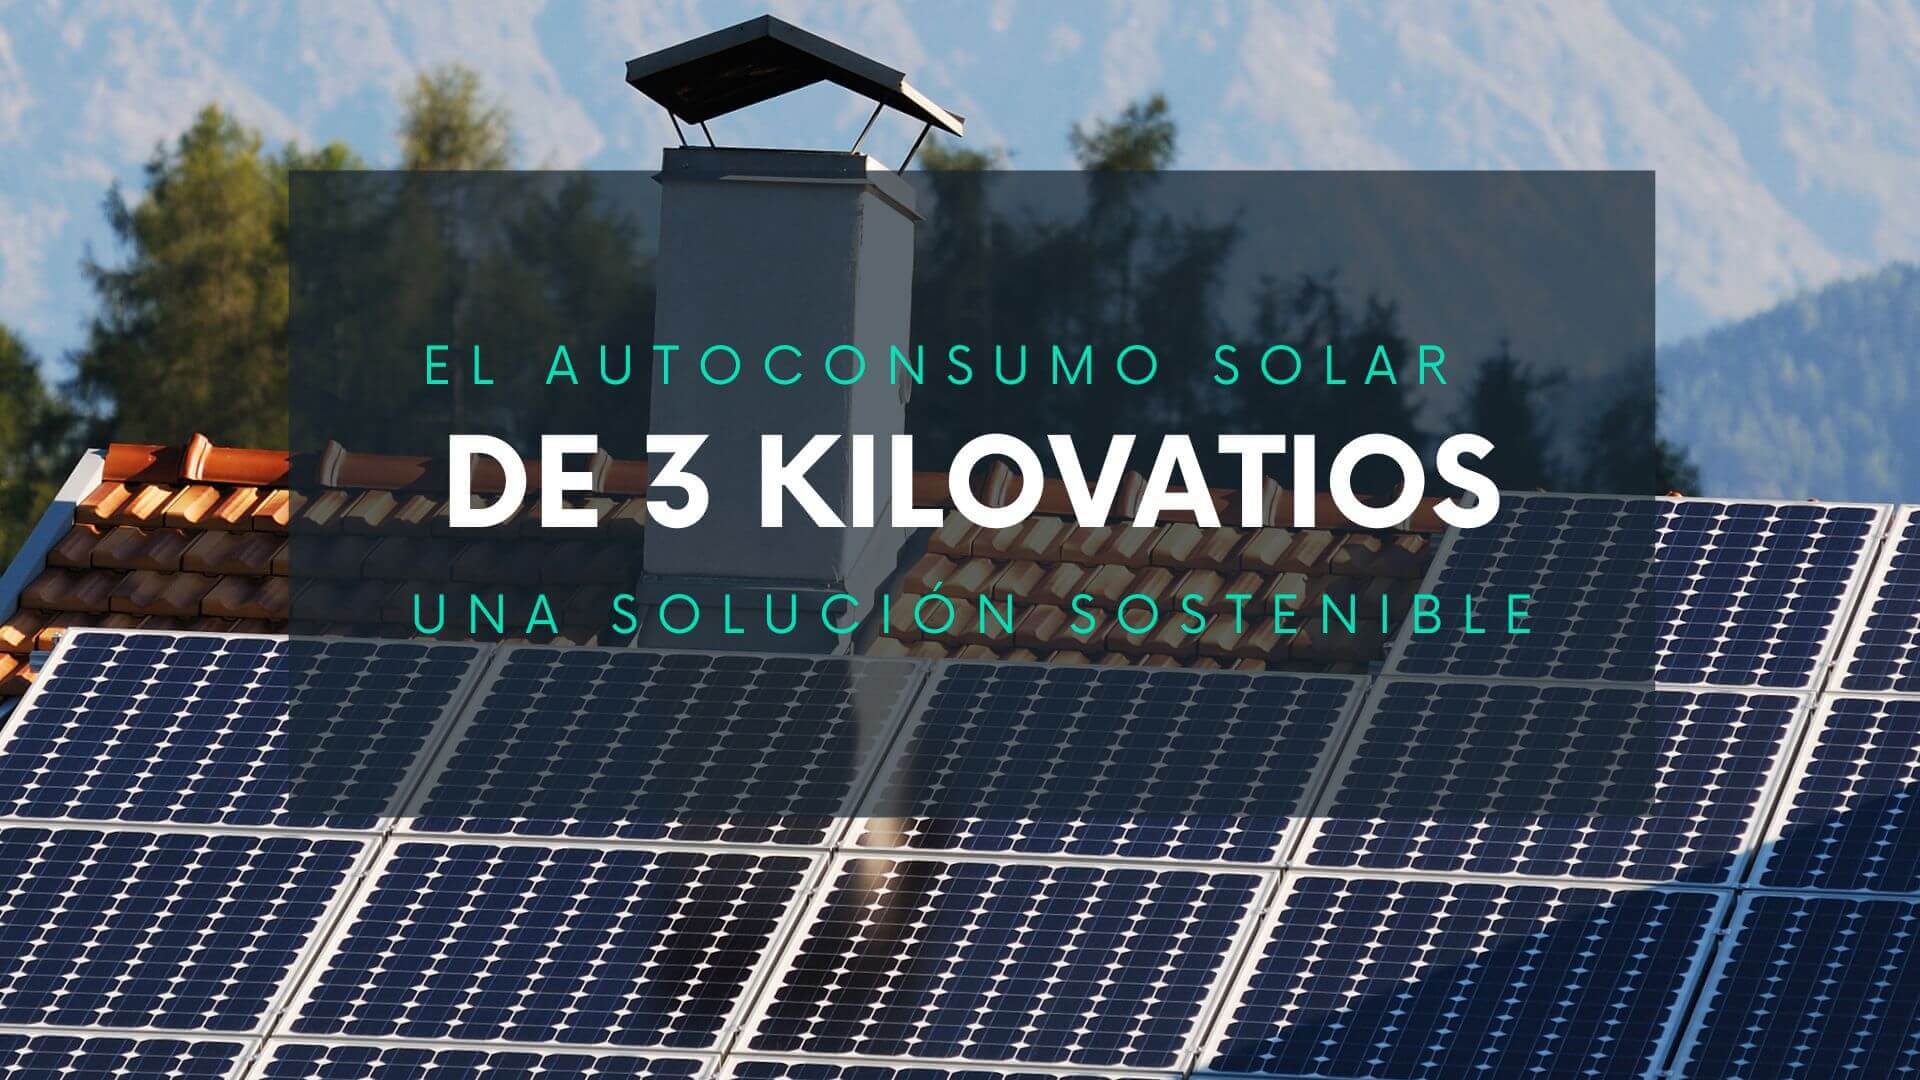 El autoconsumo solar de 3 kilovatios